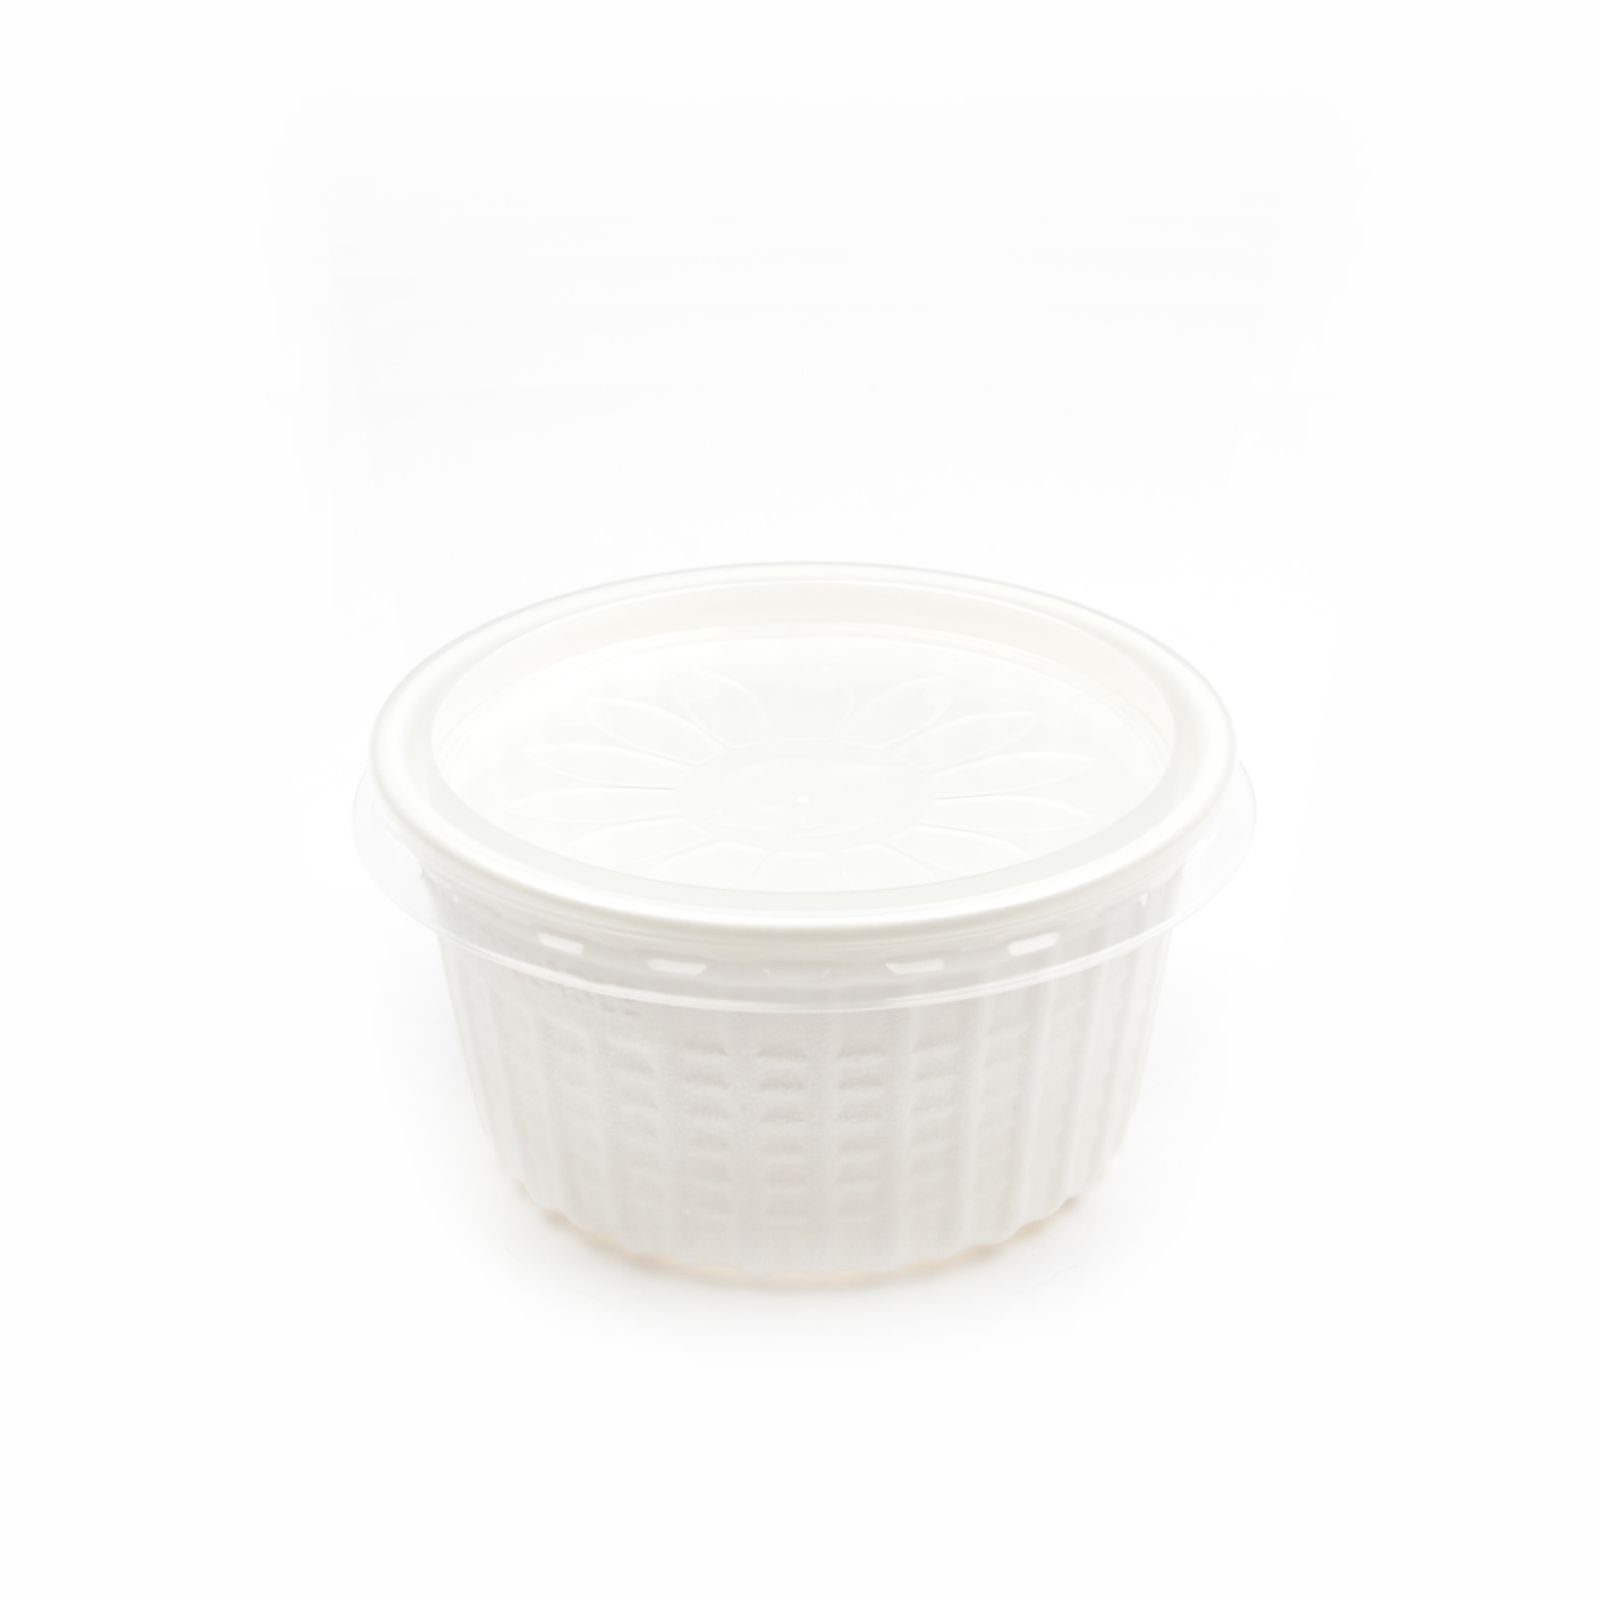 Einwegbecher 100 Stück Thermo Suppenbecher mit Deckel, 350 ml, weiß, rund, Suppenschalen Soup To Go-Container Take Away Suppenbehälter